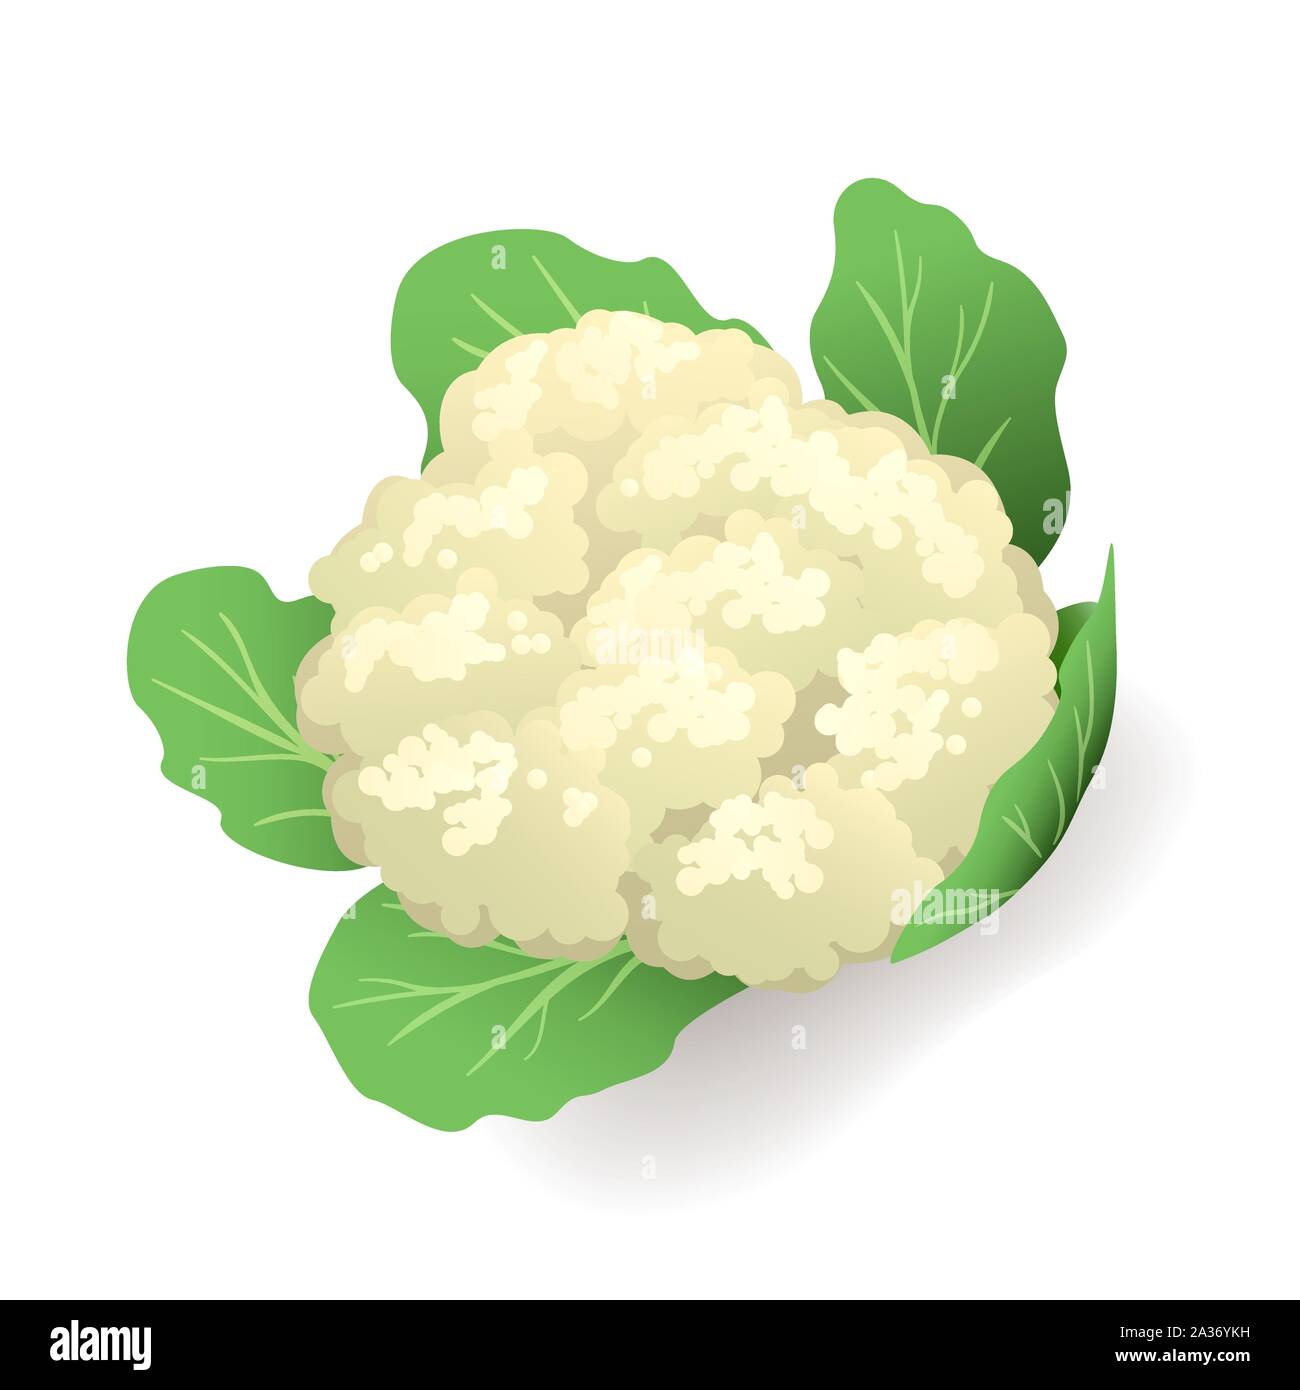 Cavolfiore bianco con foglie verdi isolati icona, vegetale, illustrazione vettoriale. Illustrazione Vettoriale